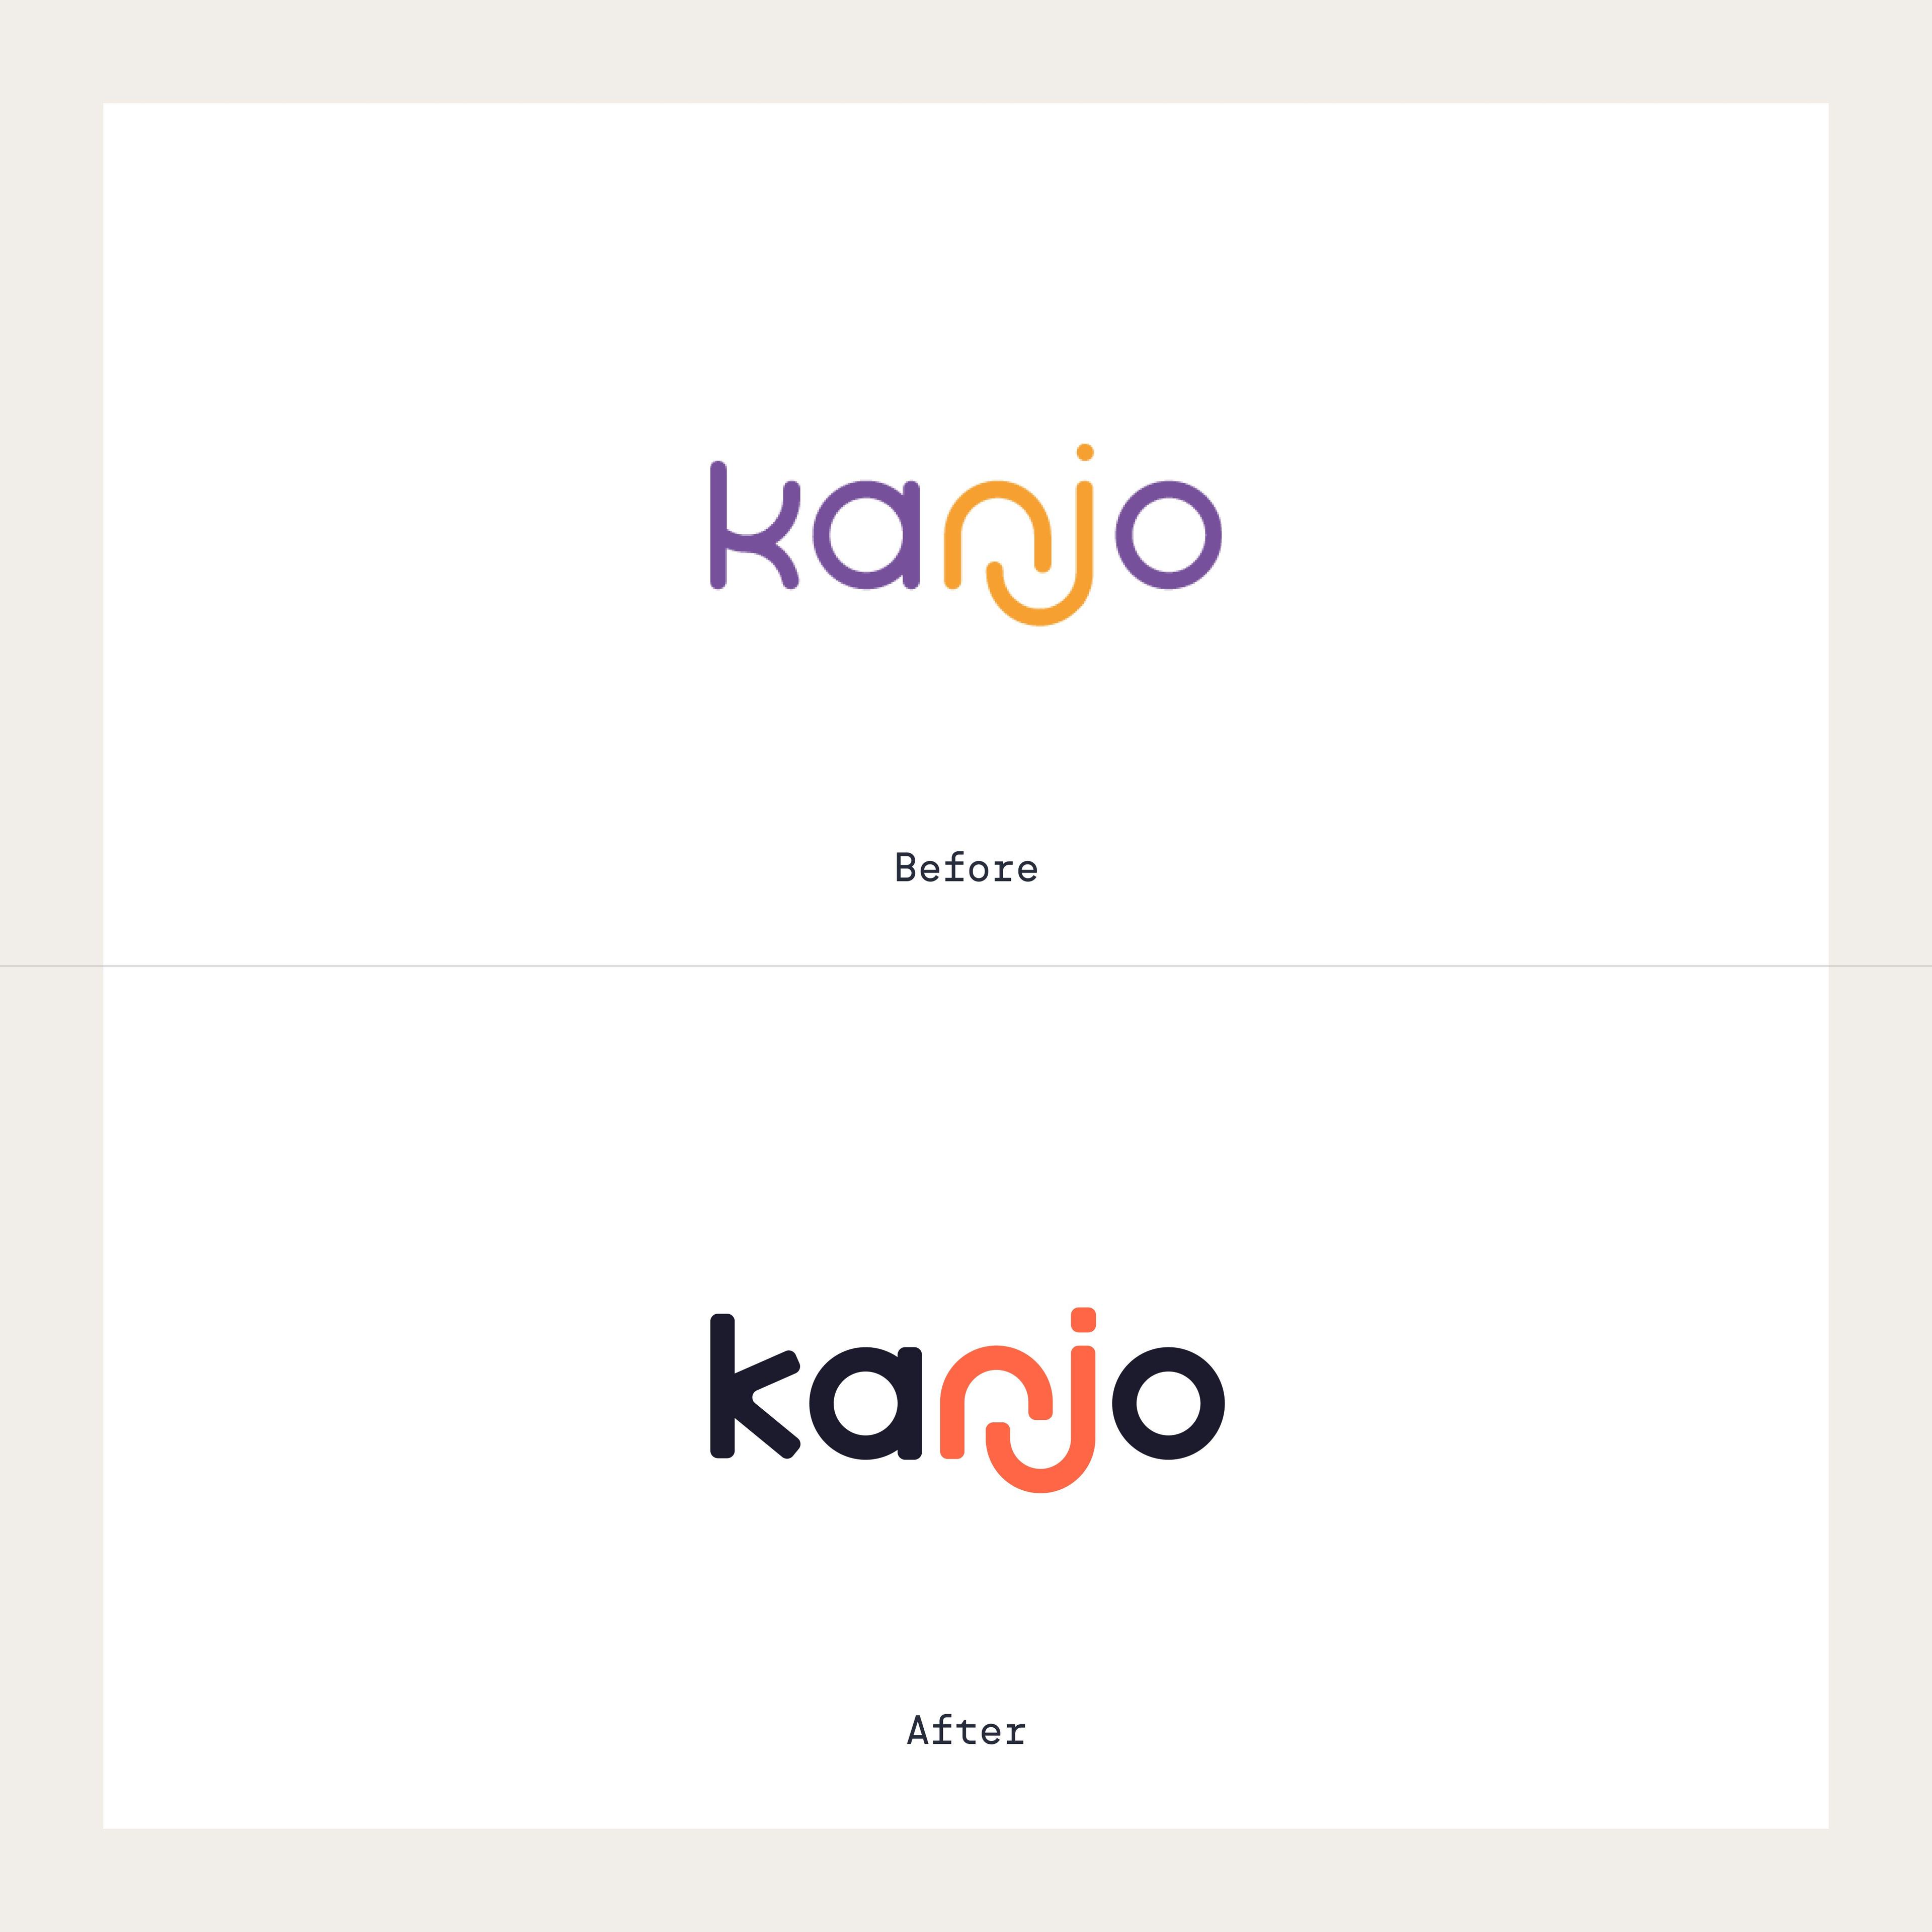 Kanjo health rebranding